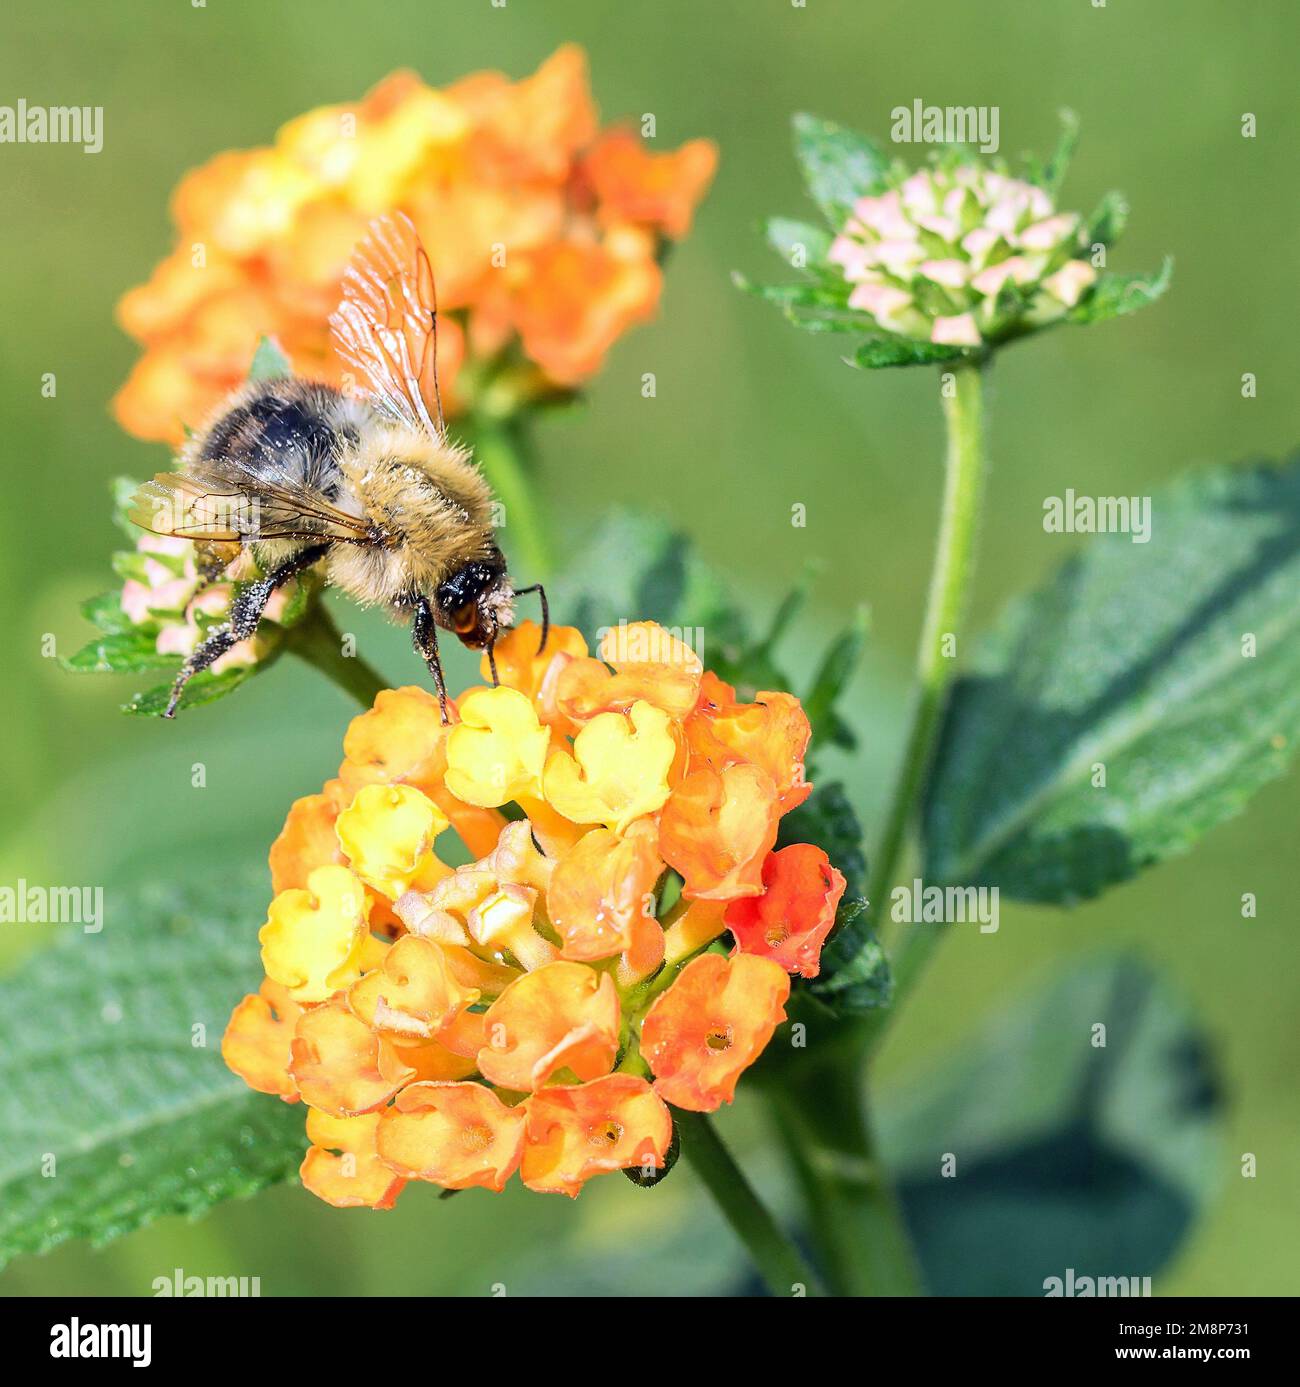 Wandelröschen mit Biene Stock Photo